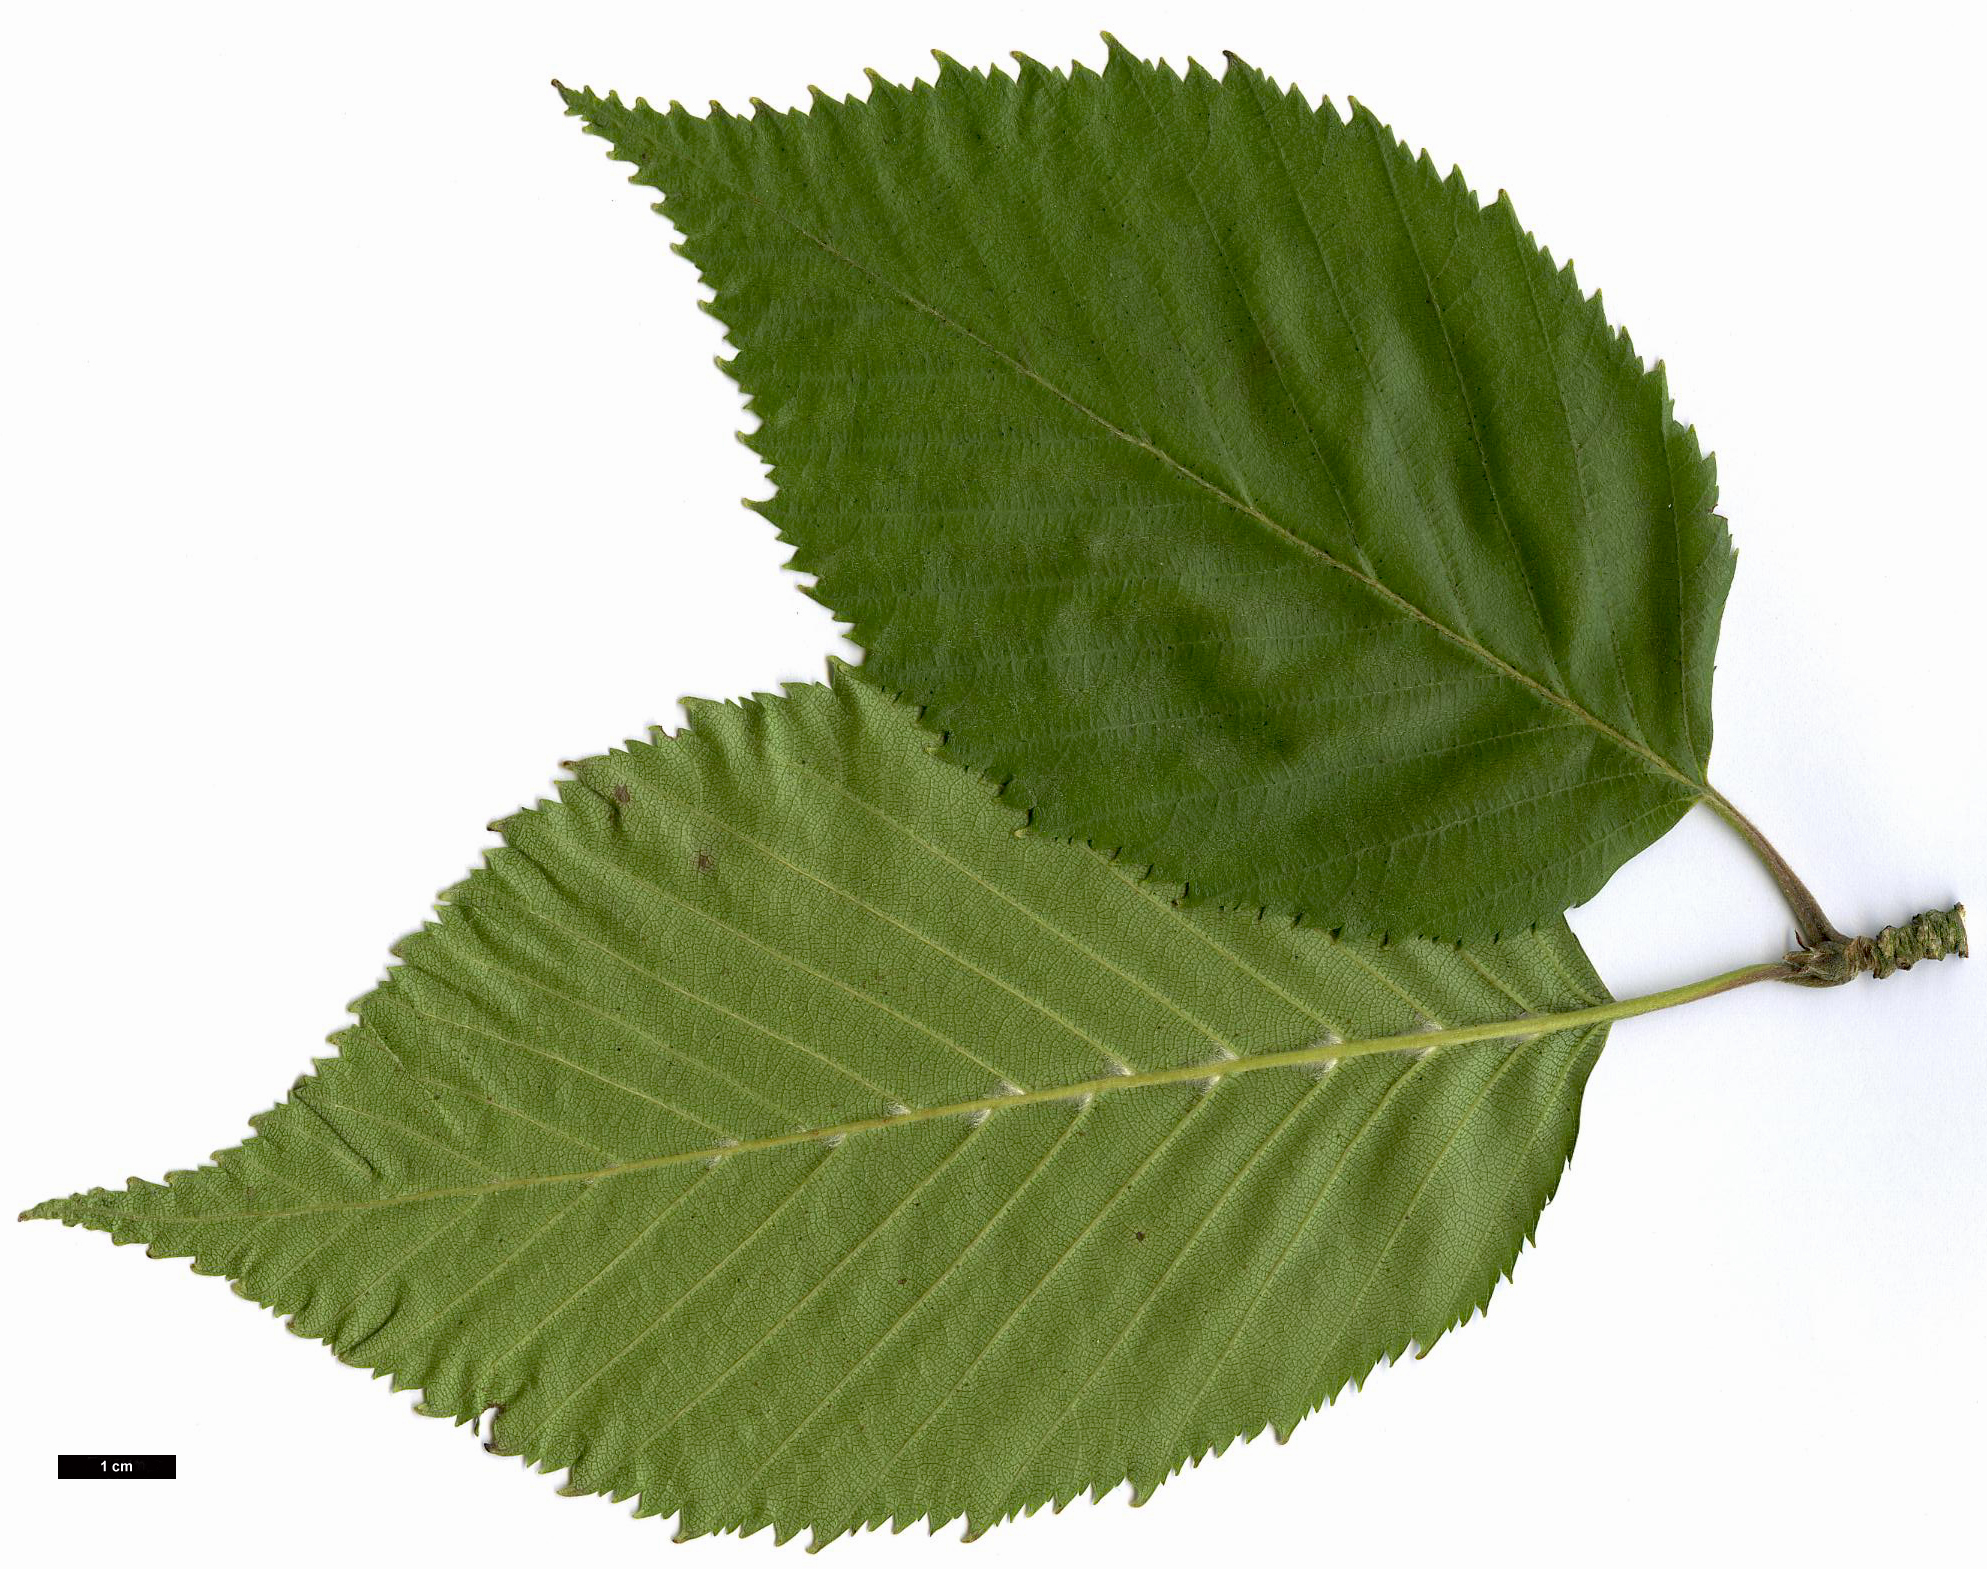 High resolution image: Family: Betulaceae - Genus: Betula - Taxon: utilis - SpeciesSub: subsp. jacquemontii 'Inverleith'